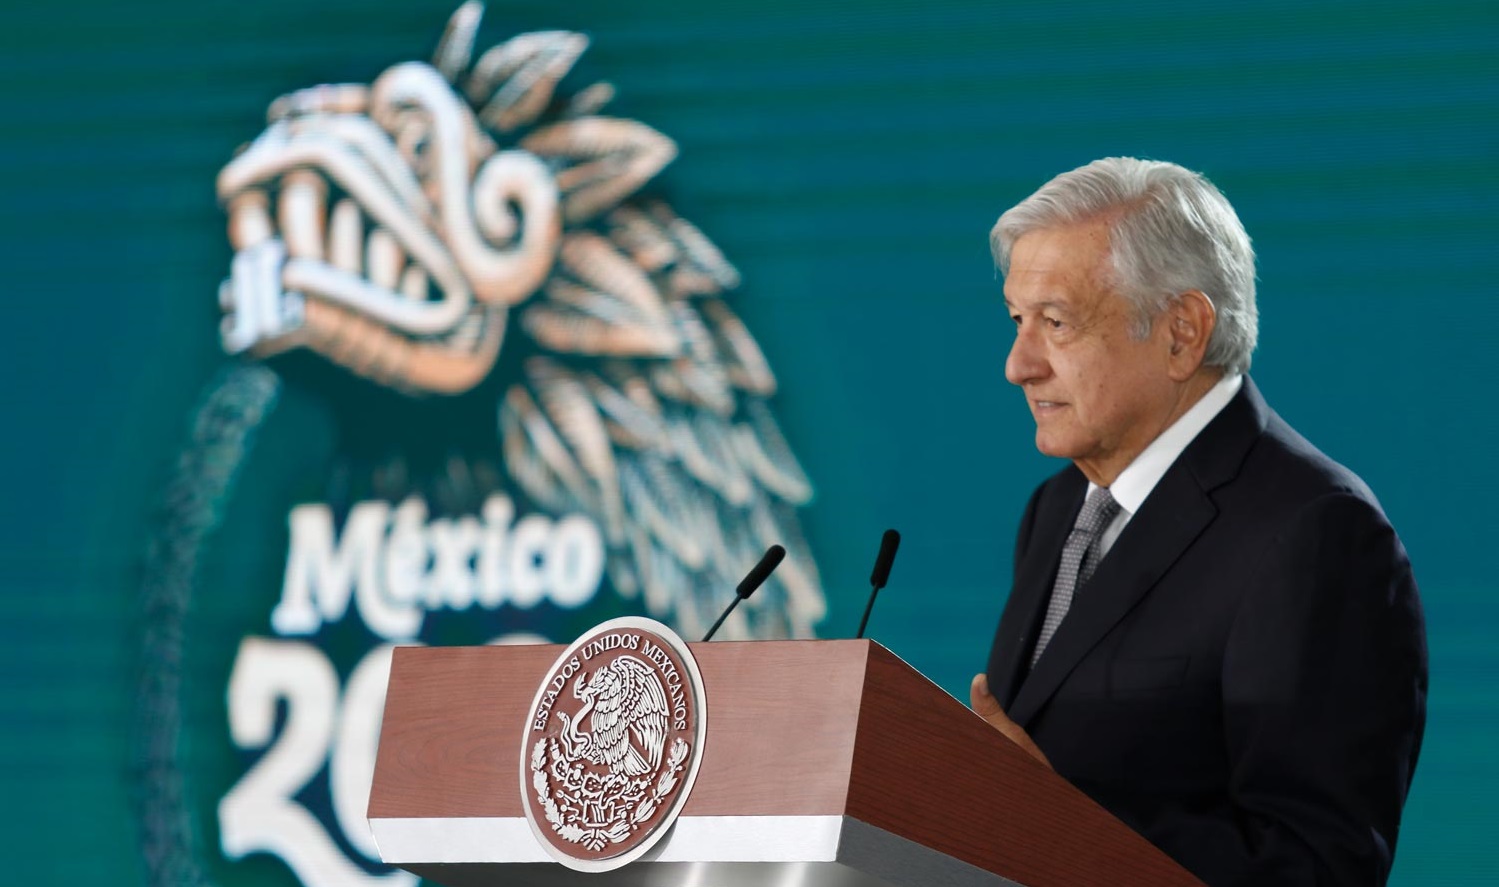 En Chihuahua hay avances en seguridad y vacunacion contra Covid 19 afirma Lopez Obrador